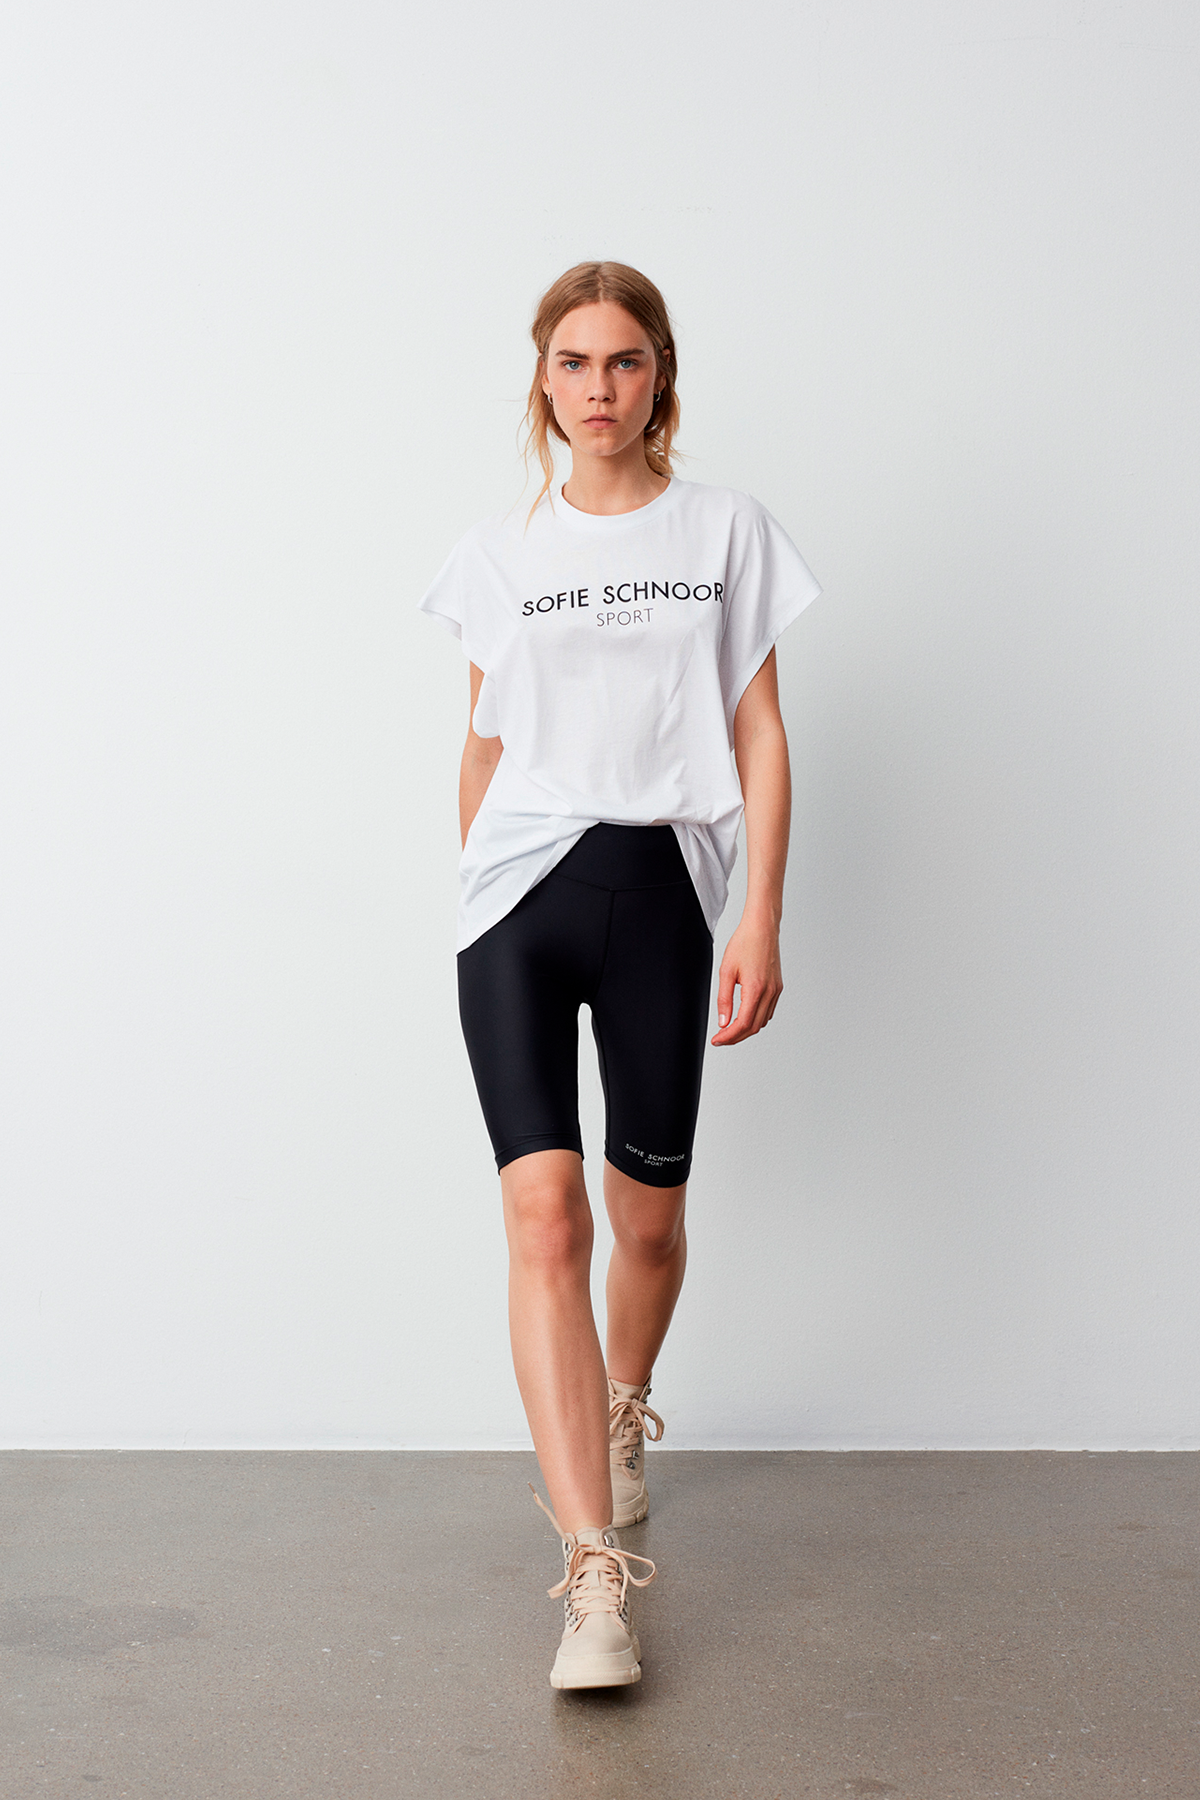 Sofie Schnoor T-shirt S, Farve: Hvid, Størrelse: L, Dame